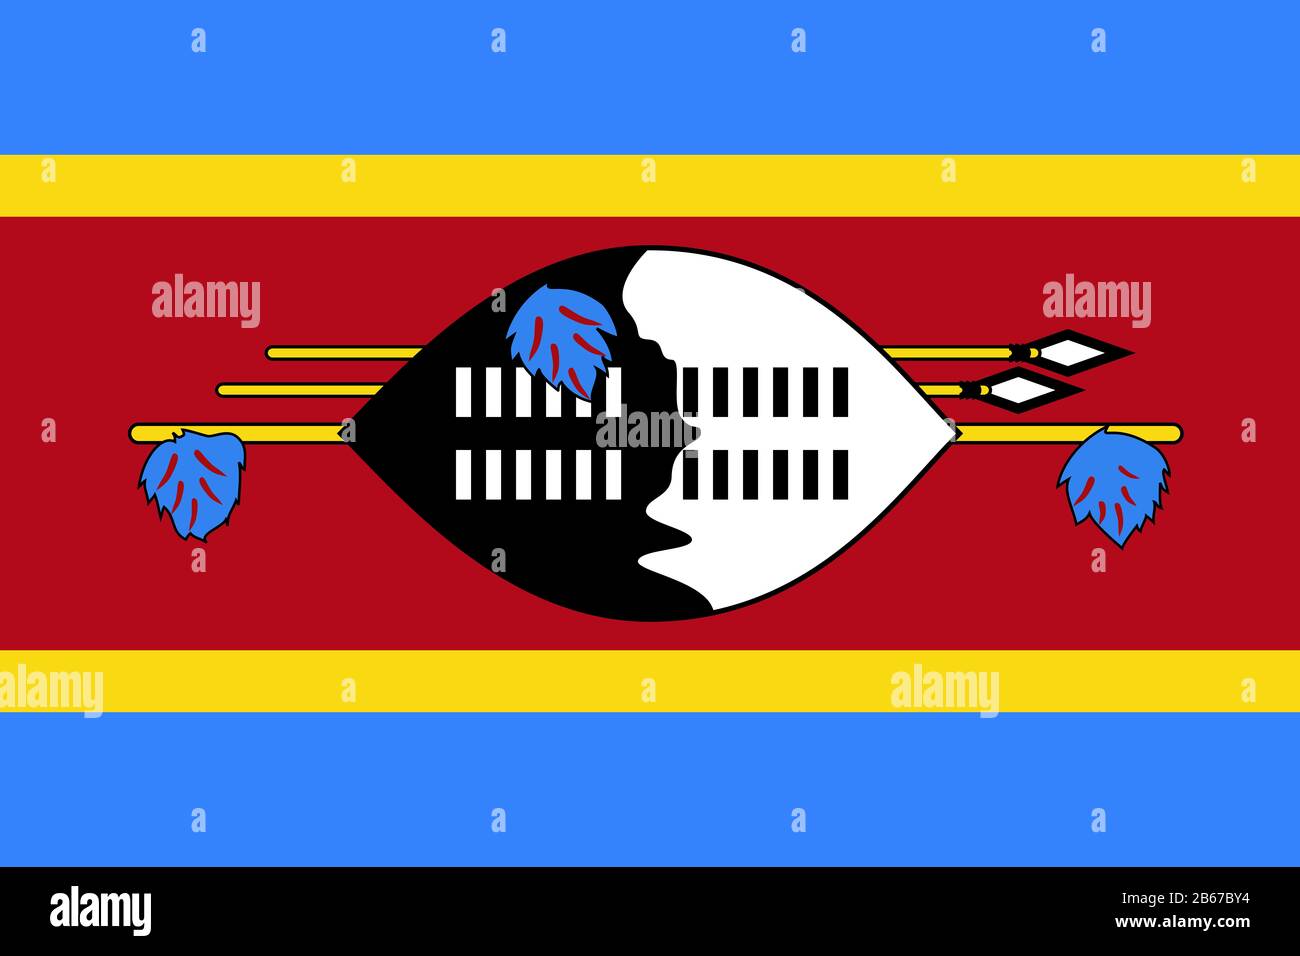 Drapeau du Swaziland - Swaziland - Rapport standard drapeau - mode couleur RVB réel Banque D'Images